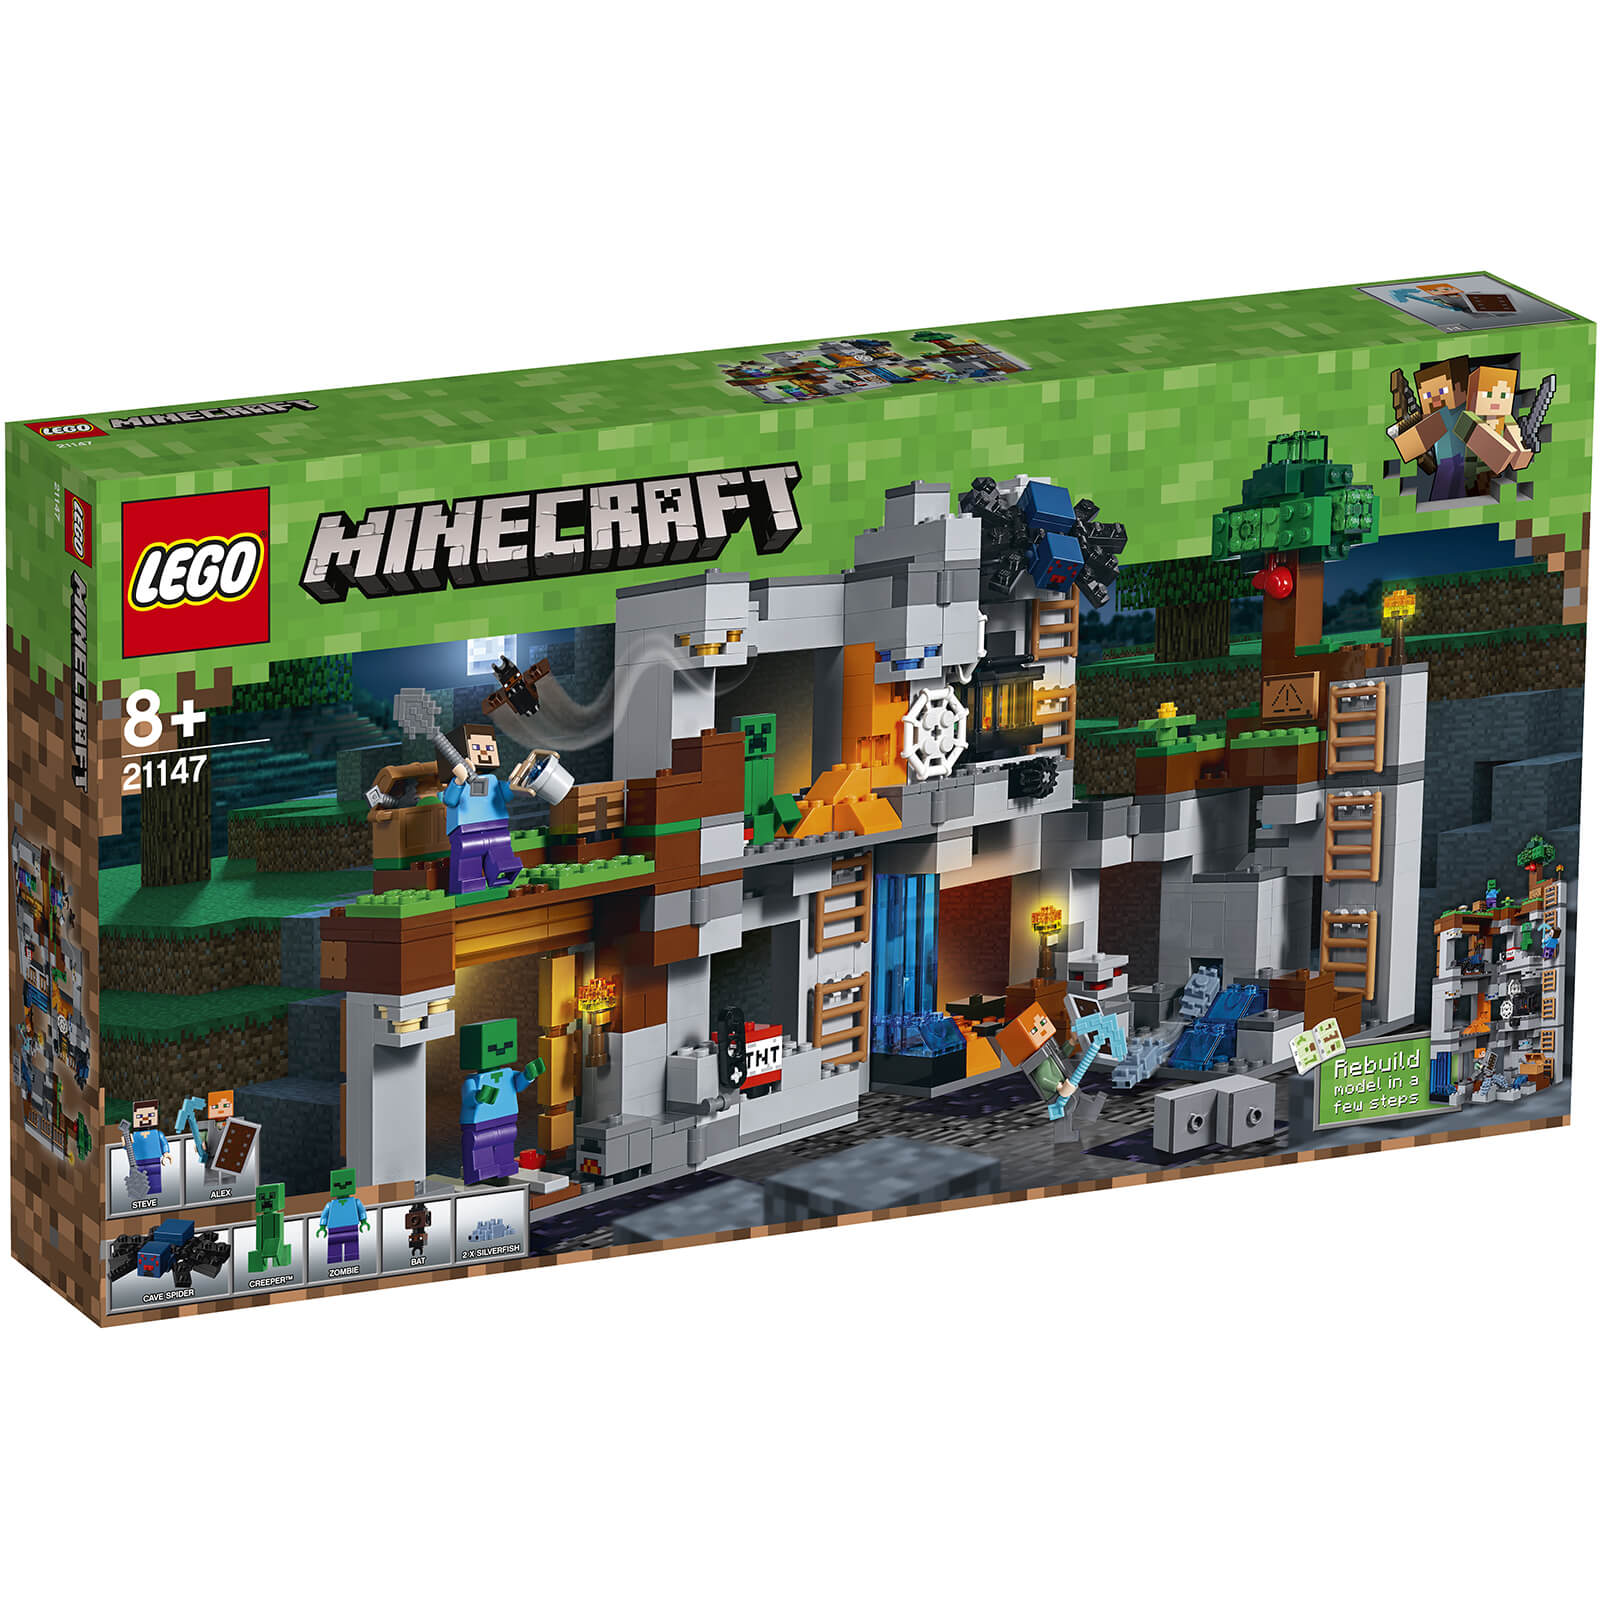 minecraft lego zombie cave